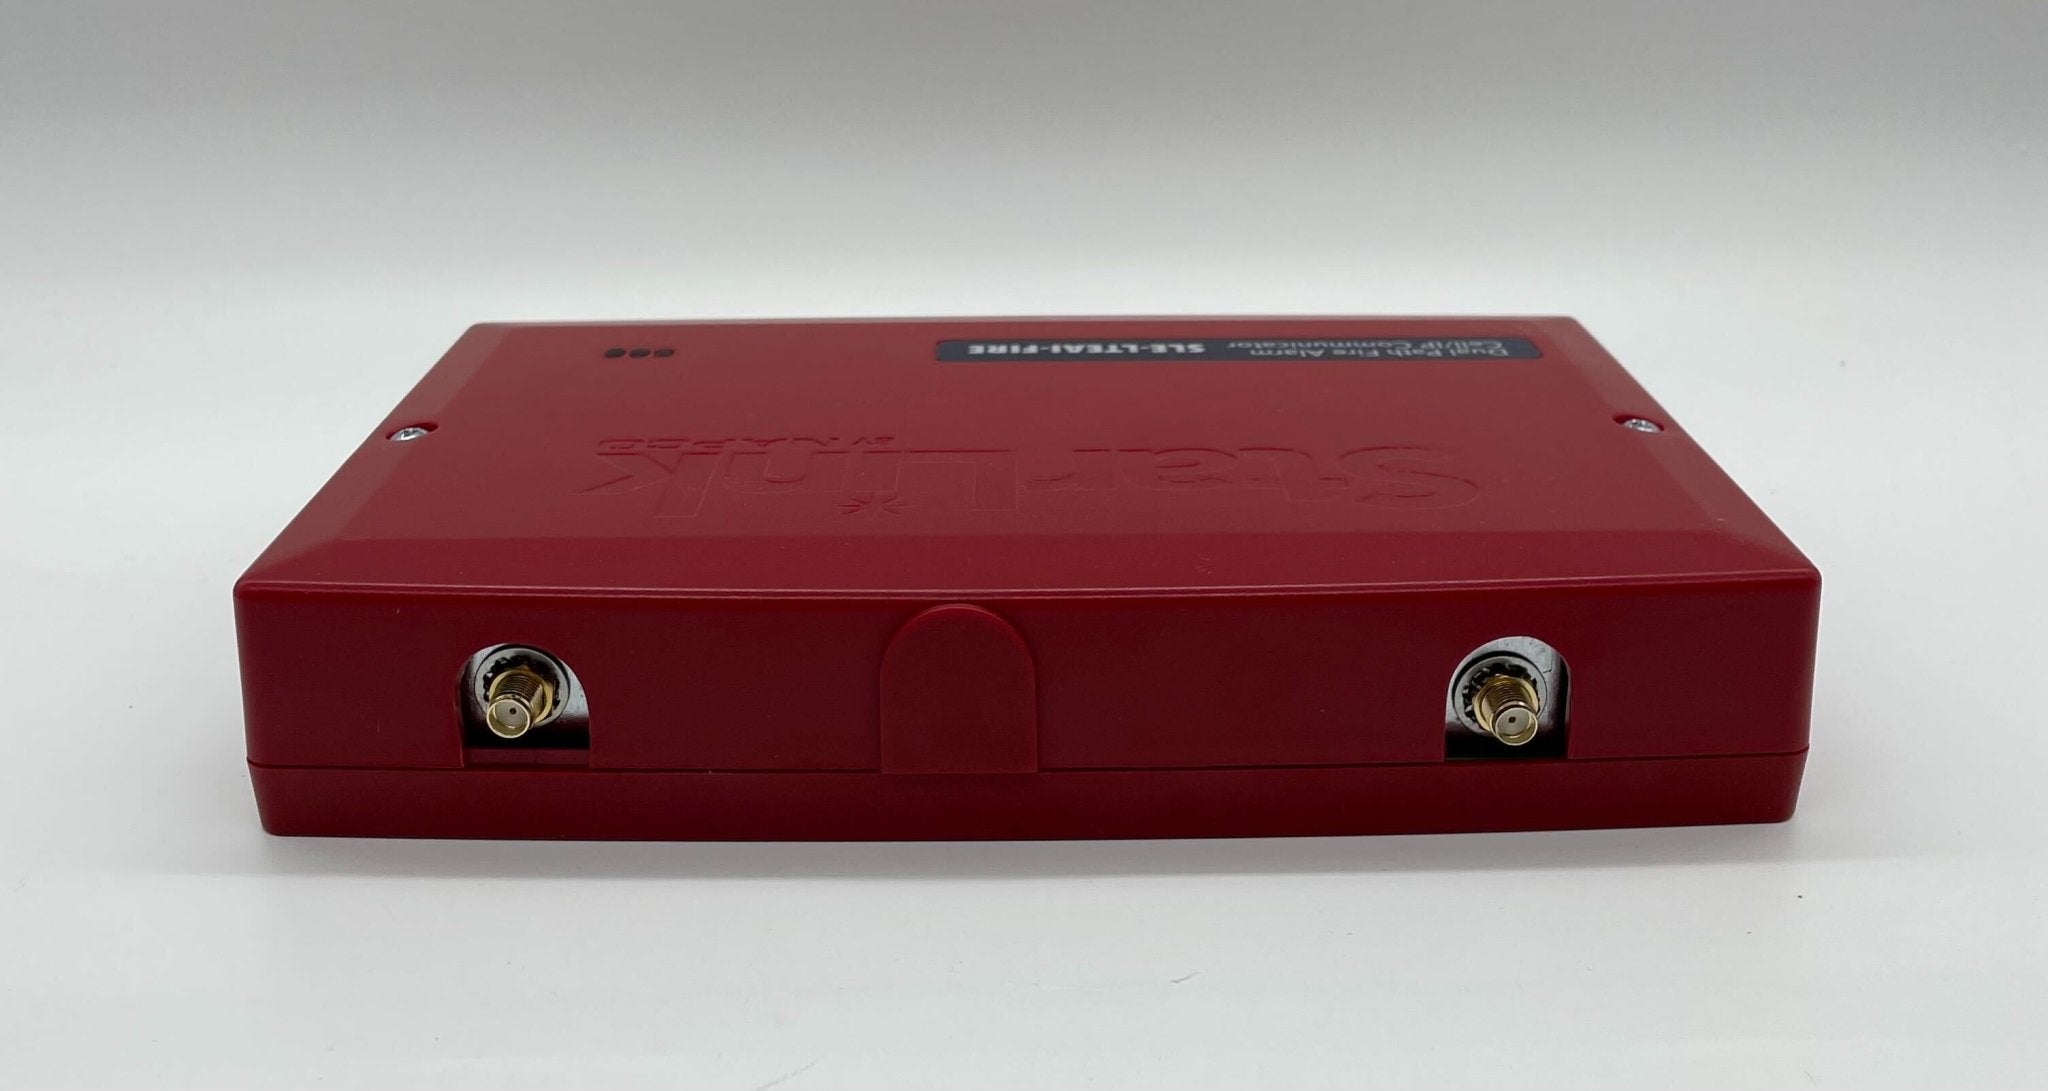 Napco SLE-LTEAI-FIRE - The Fire Alarm Supplier